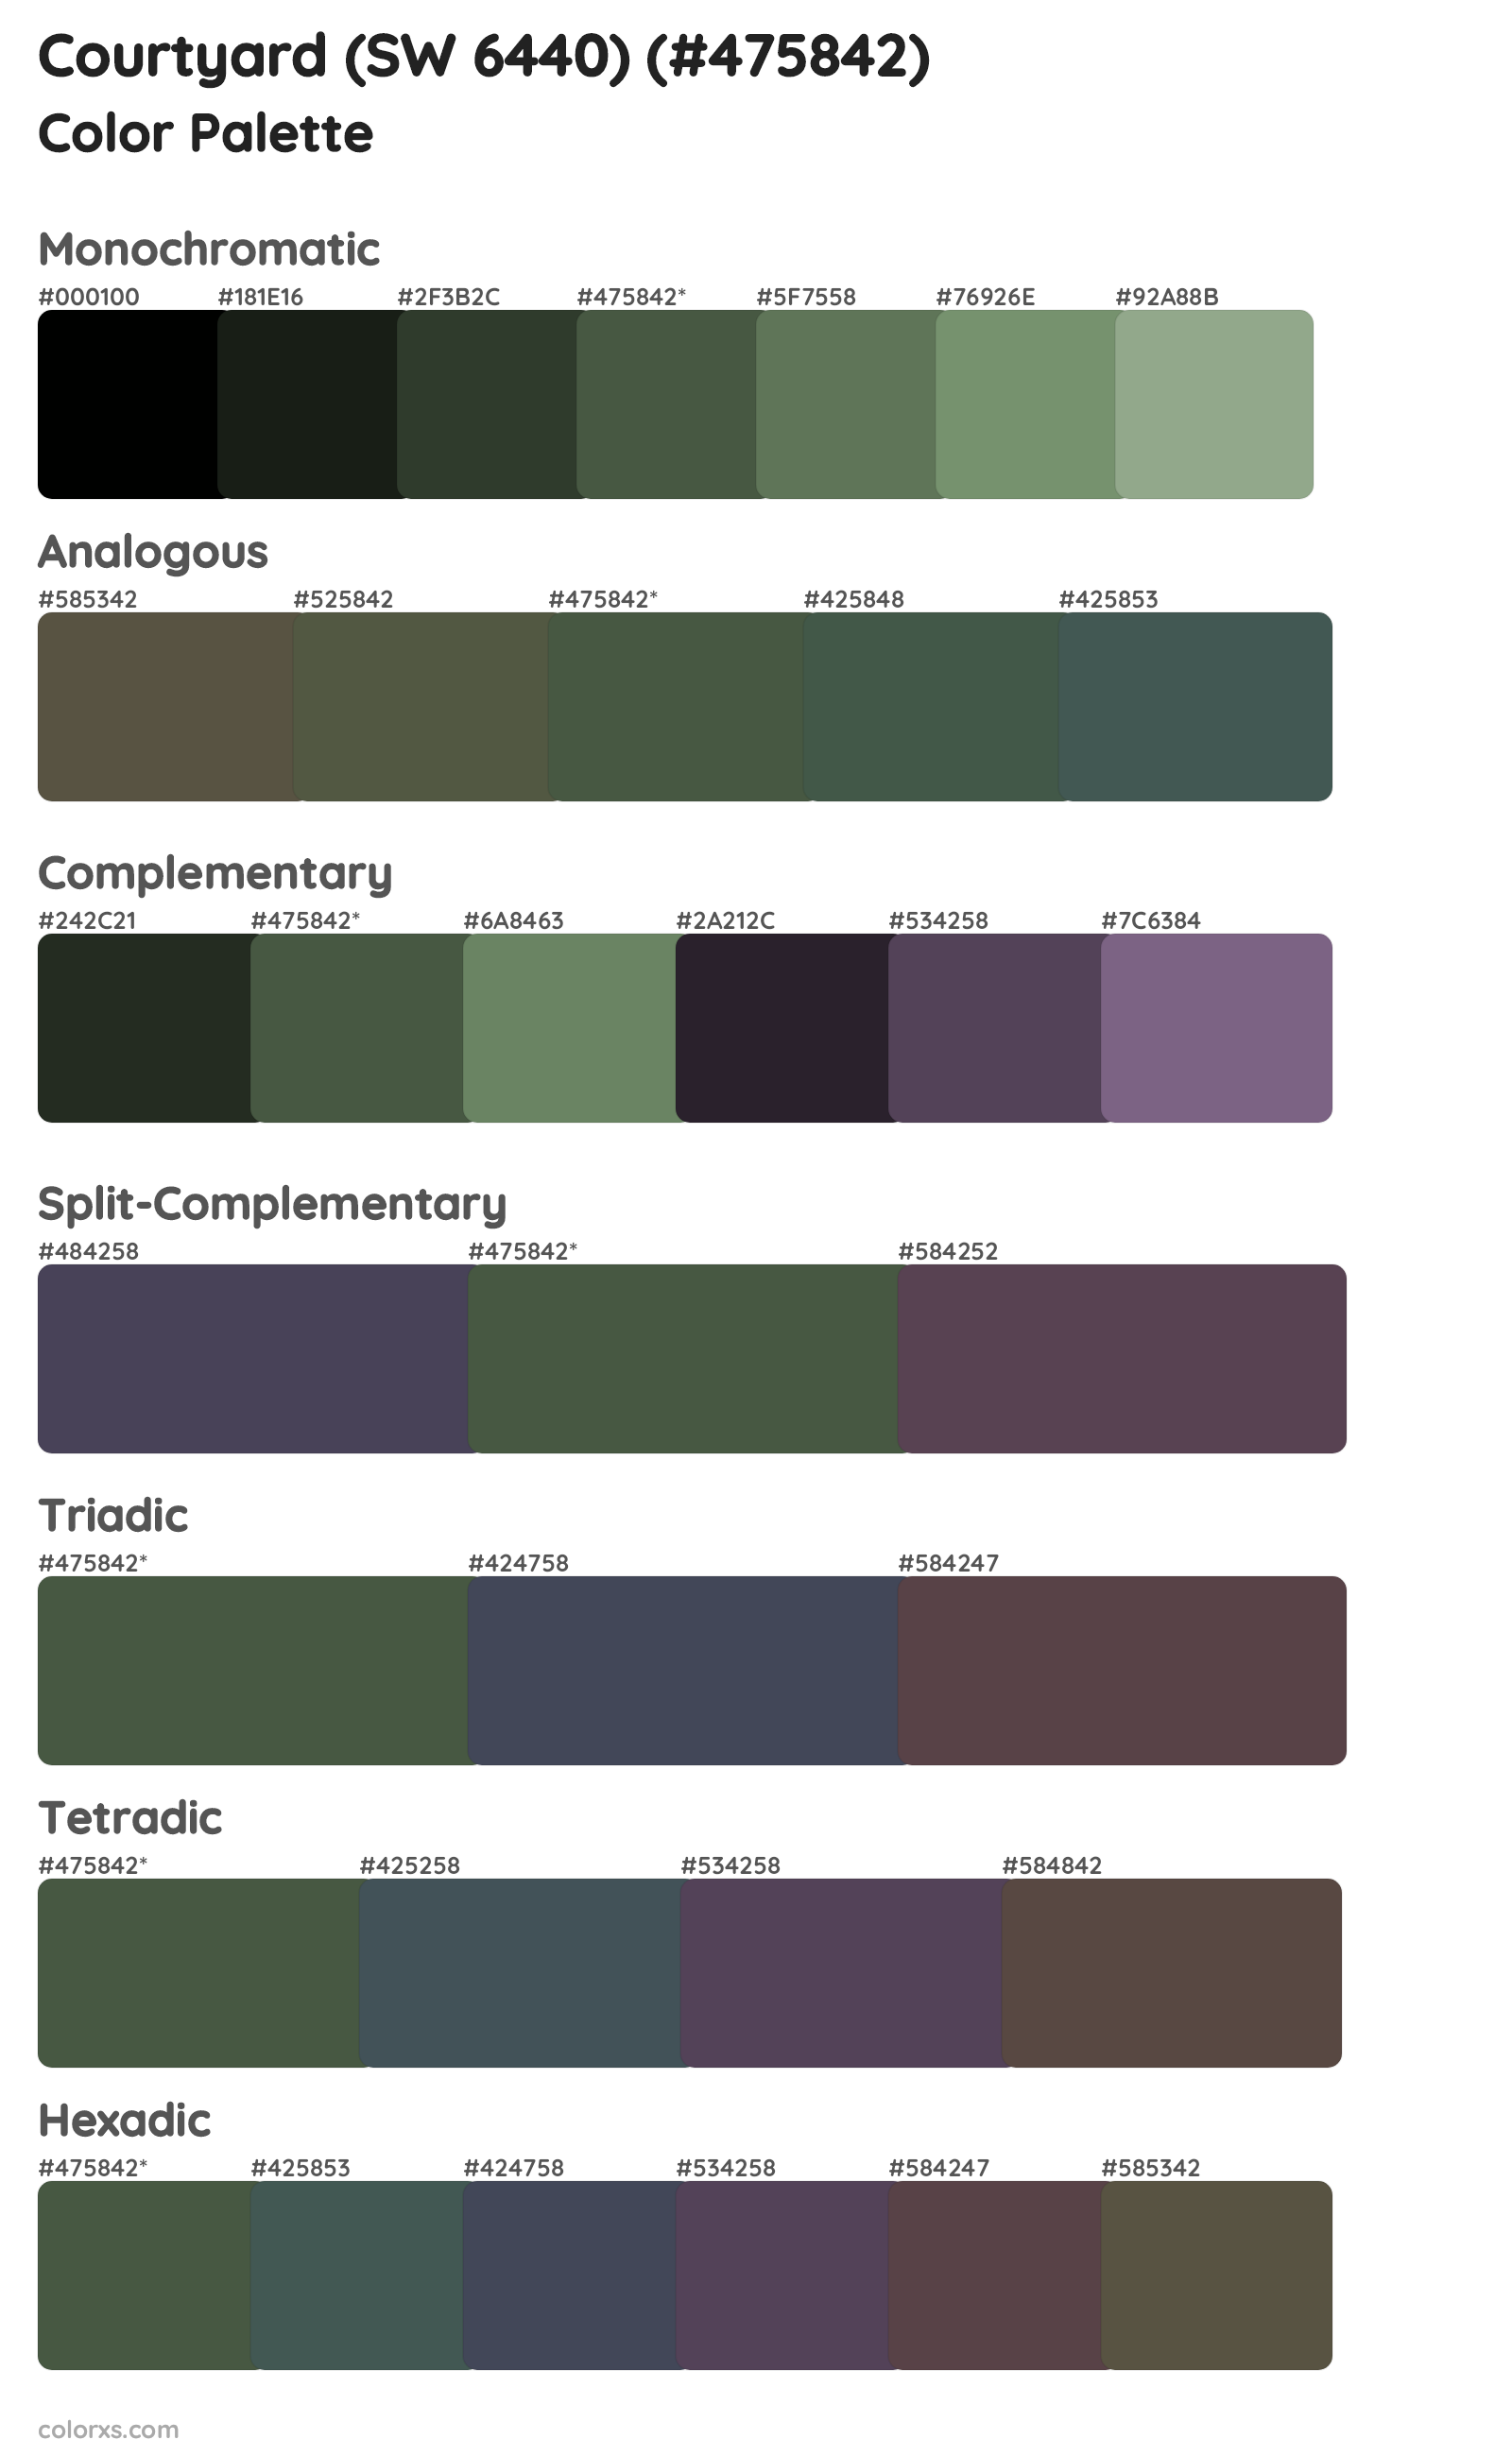 Courtyard (SW 6440) Color Scheme Palettes